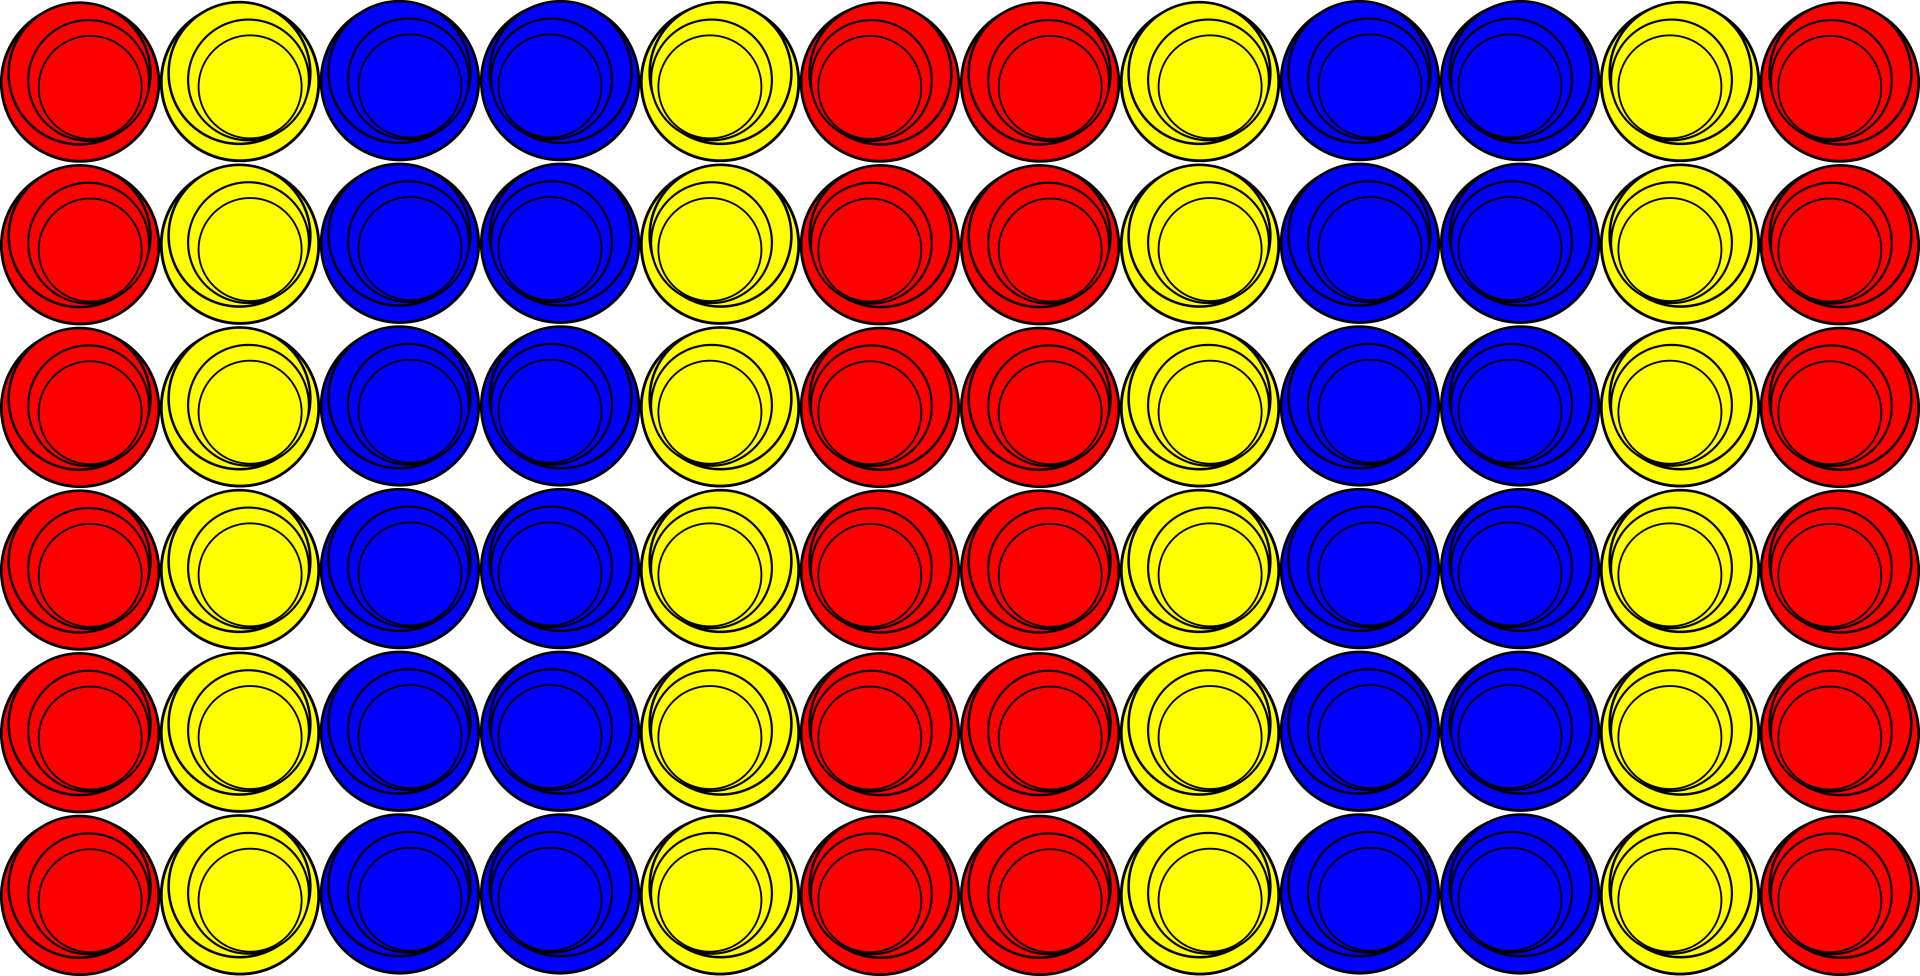 Modelul de cercuri colorate repetă